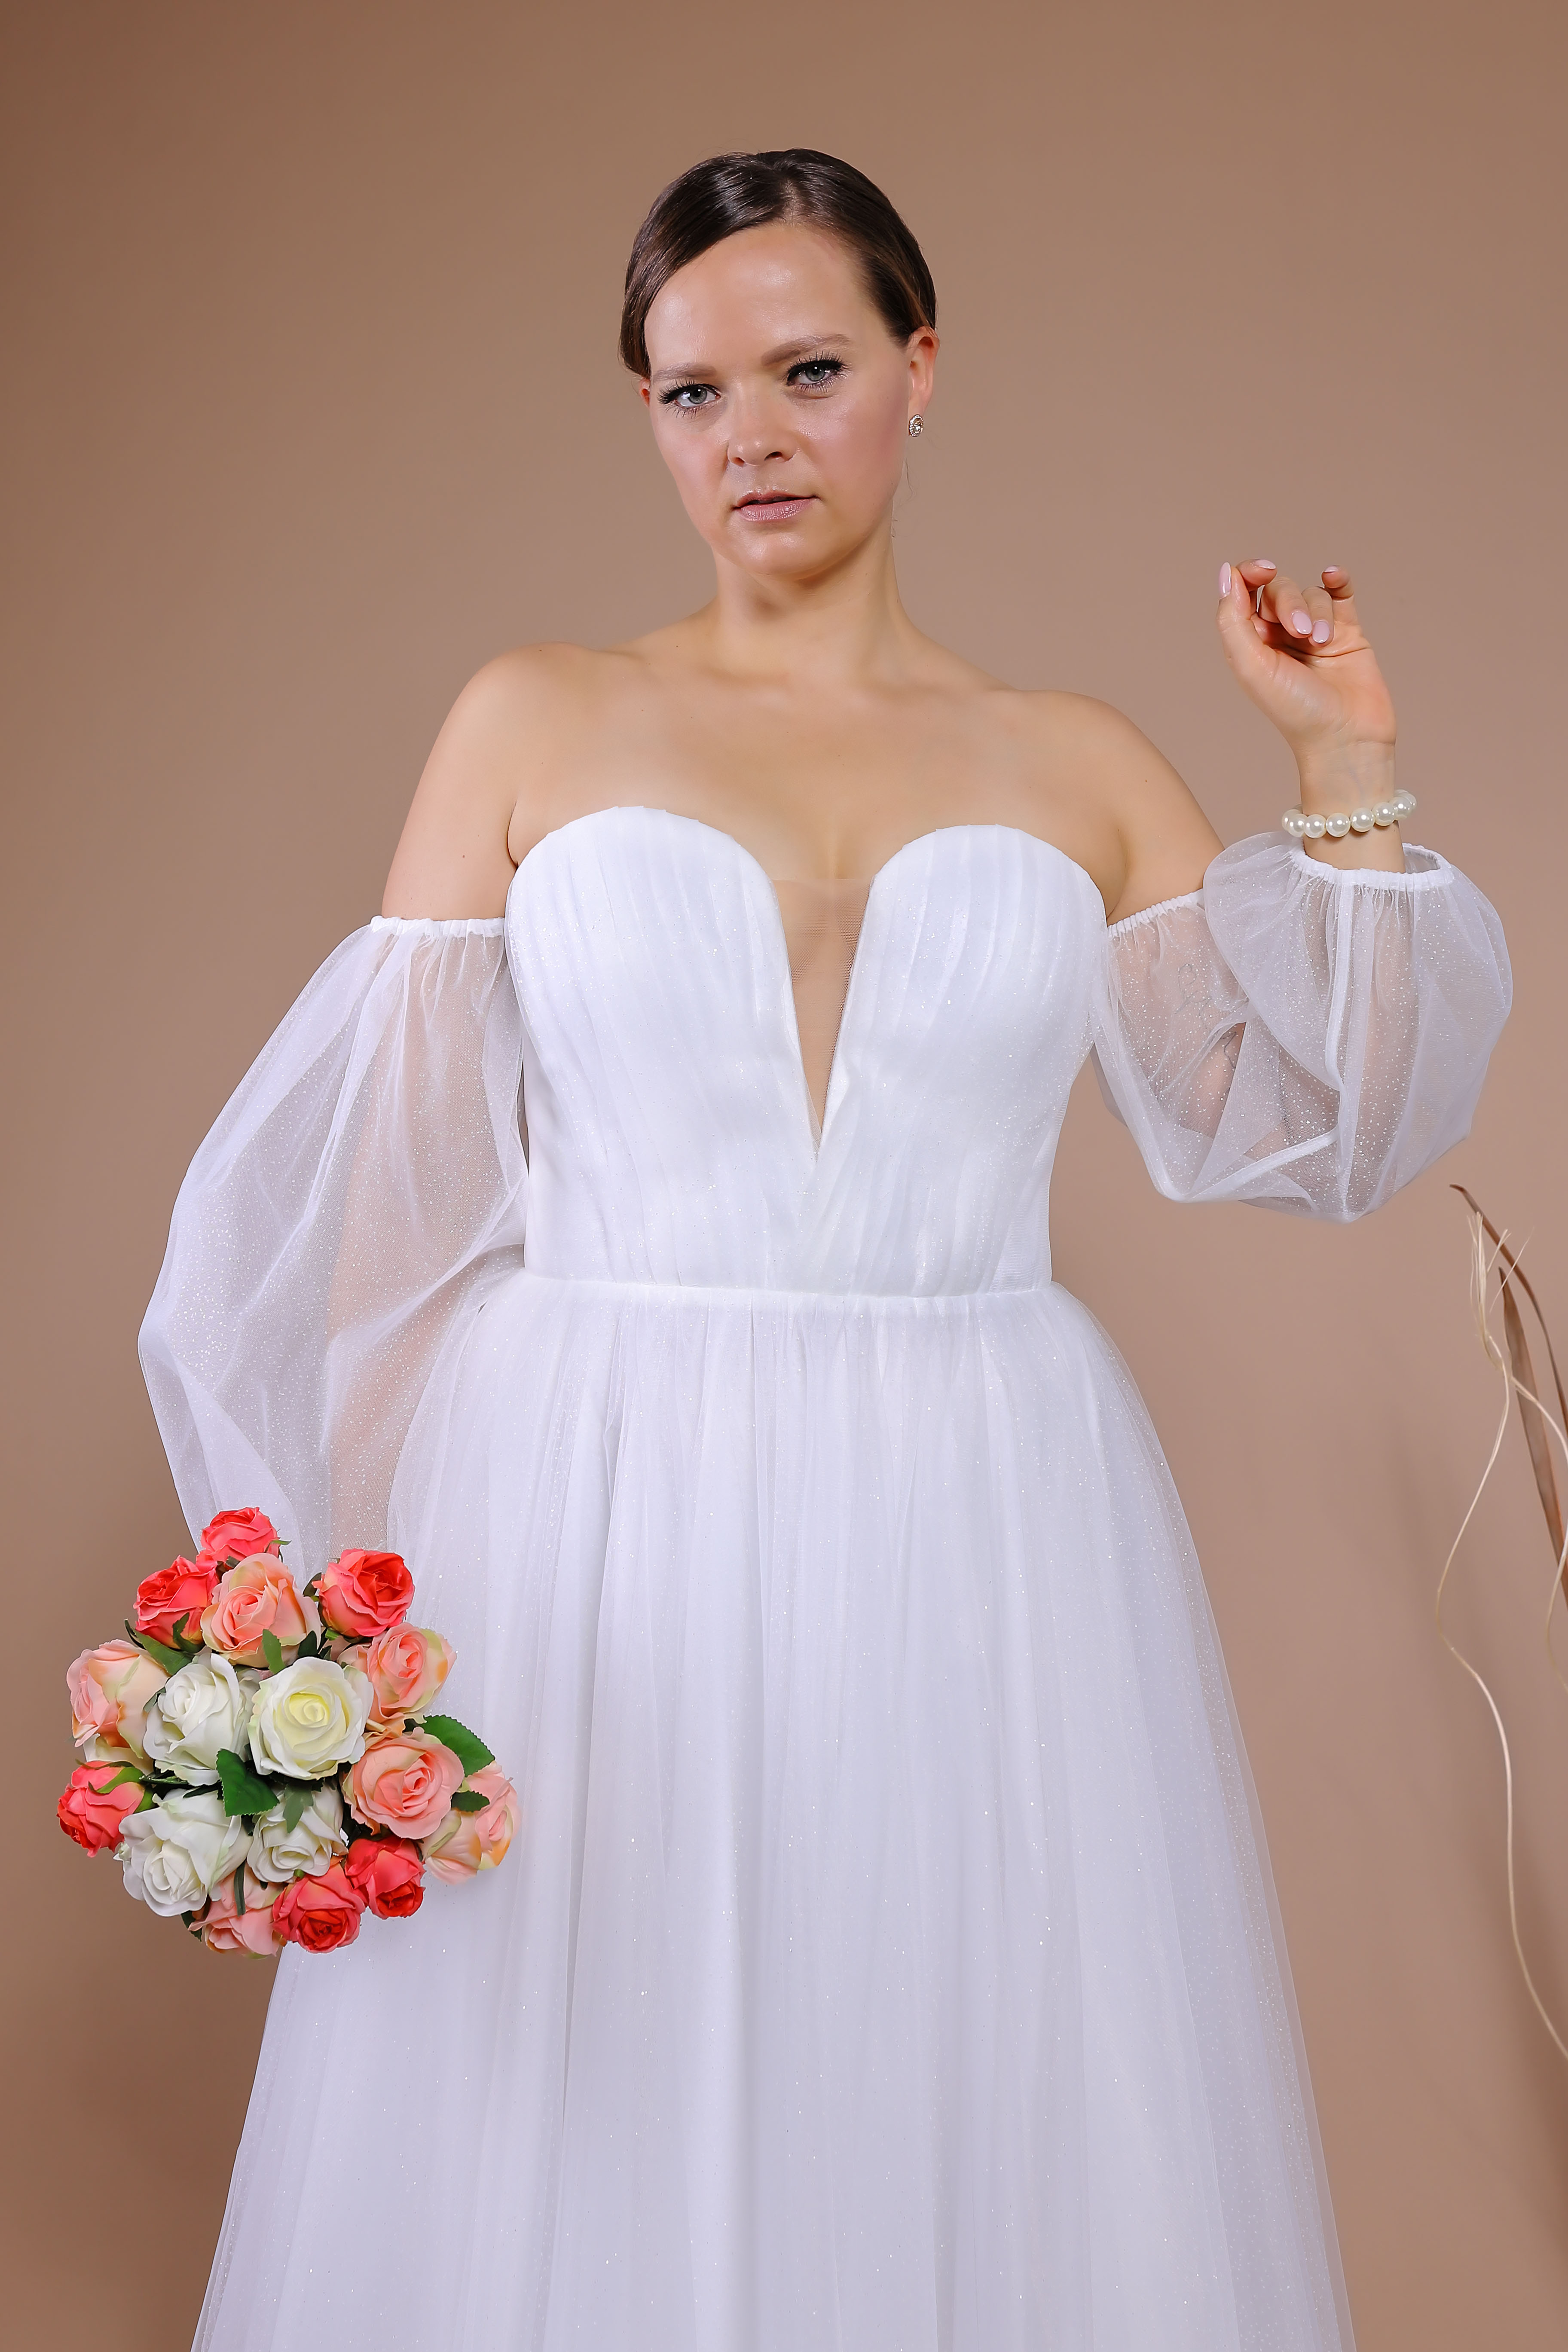 Schantal Brautkleid aus der Kollektion „Queen XXL“, Modell VA 1751 XXL. Foto 5